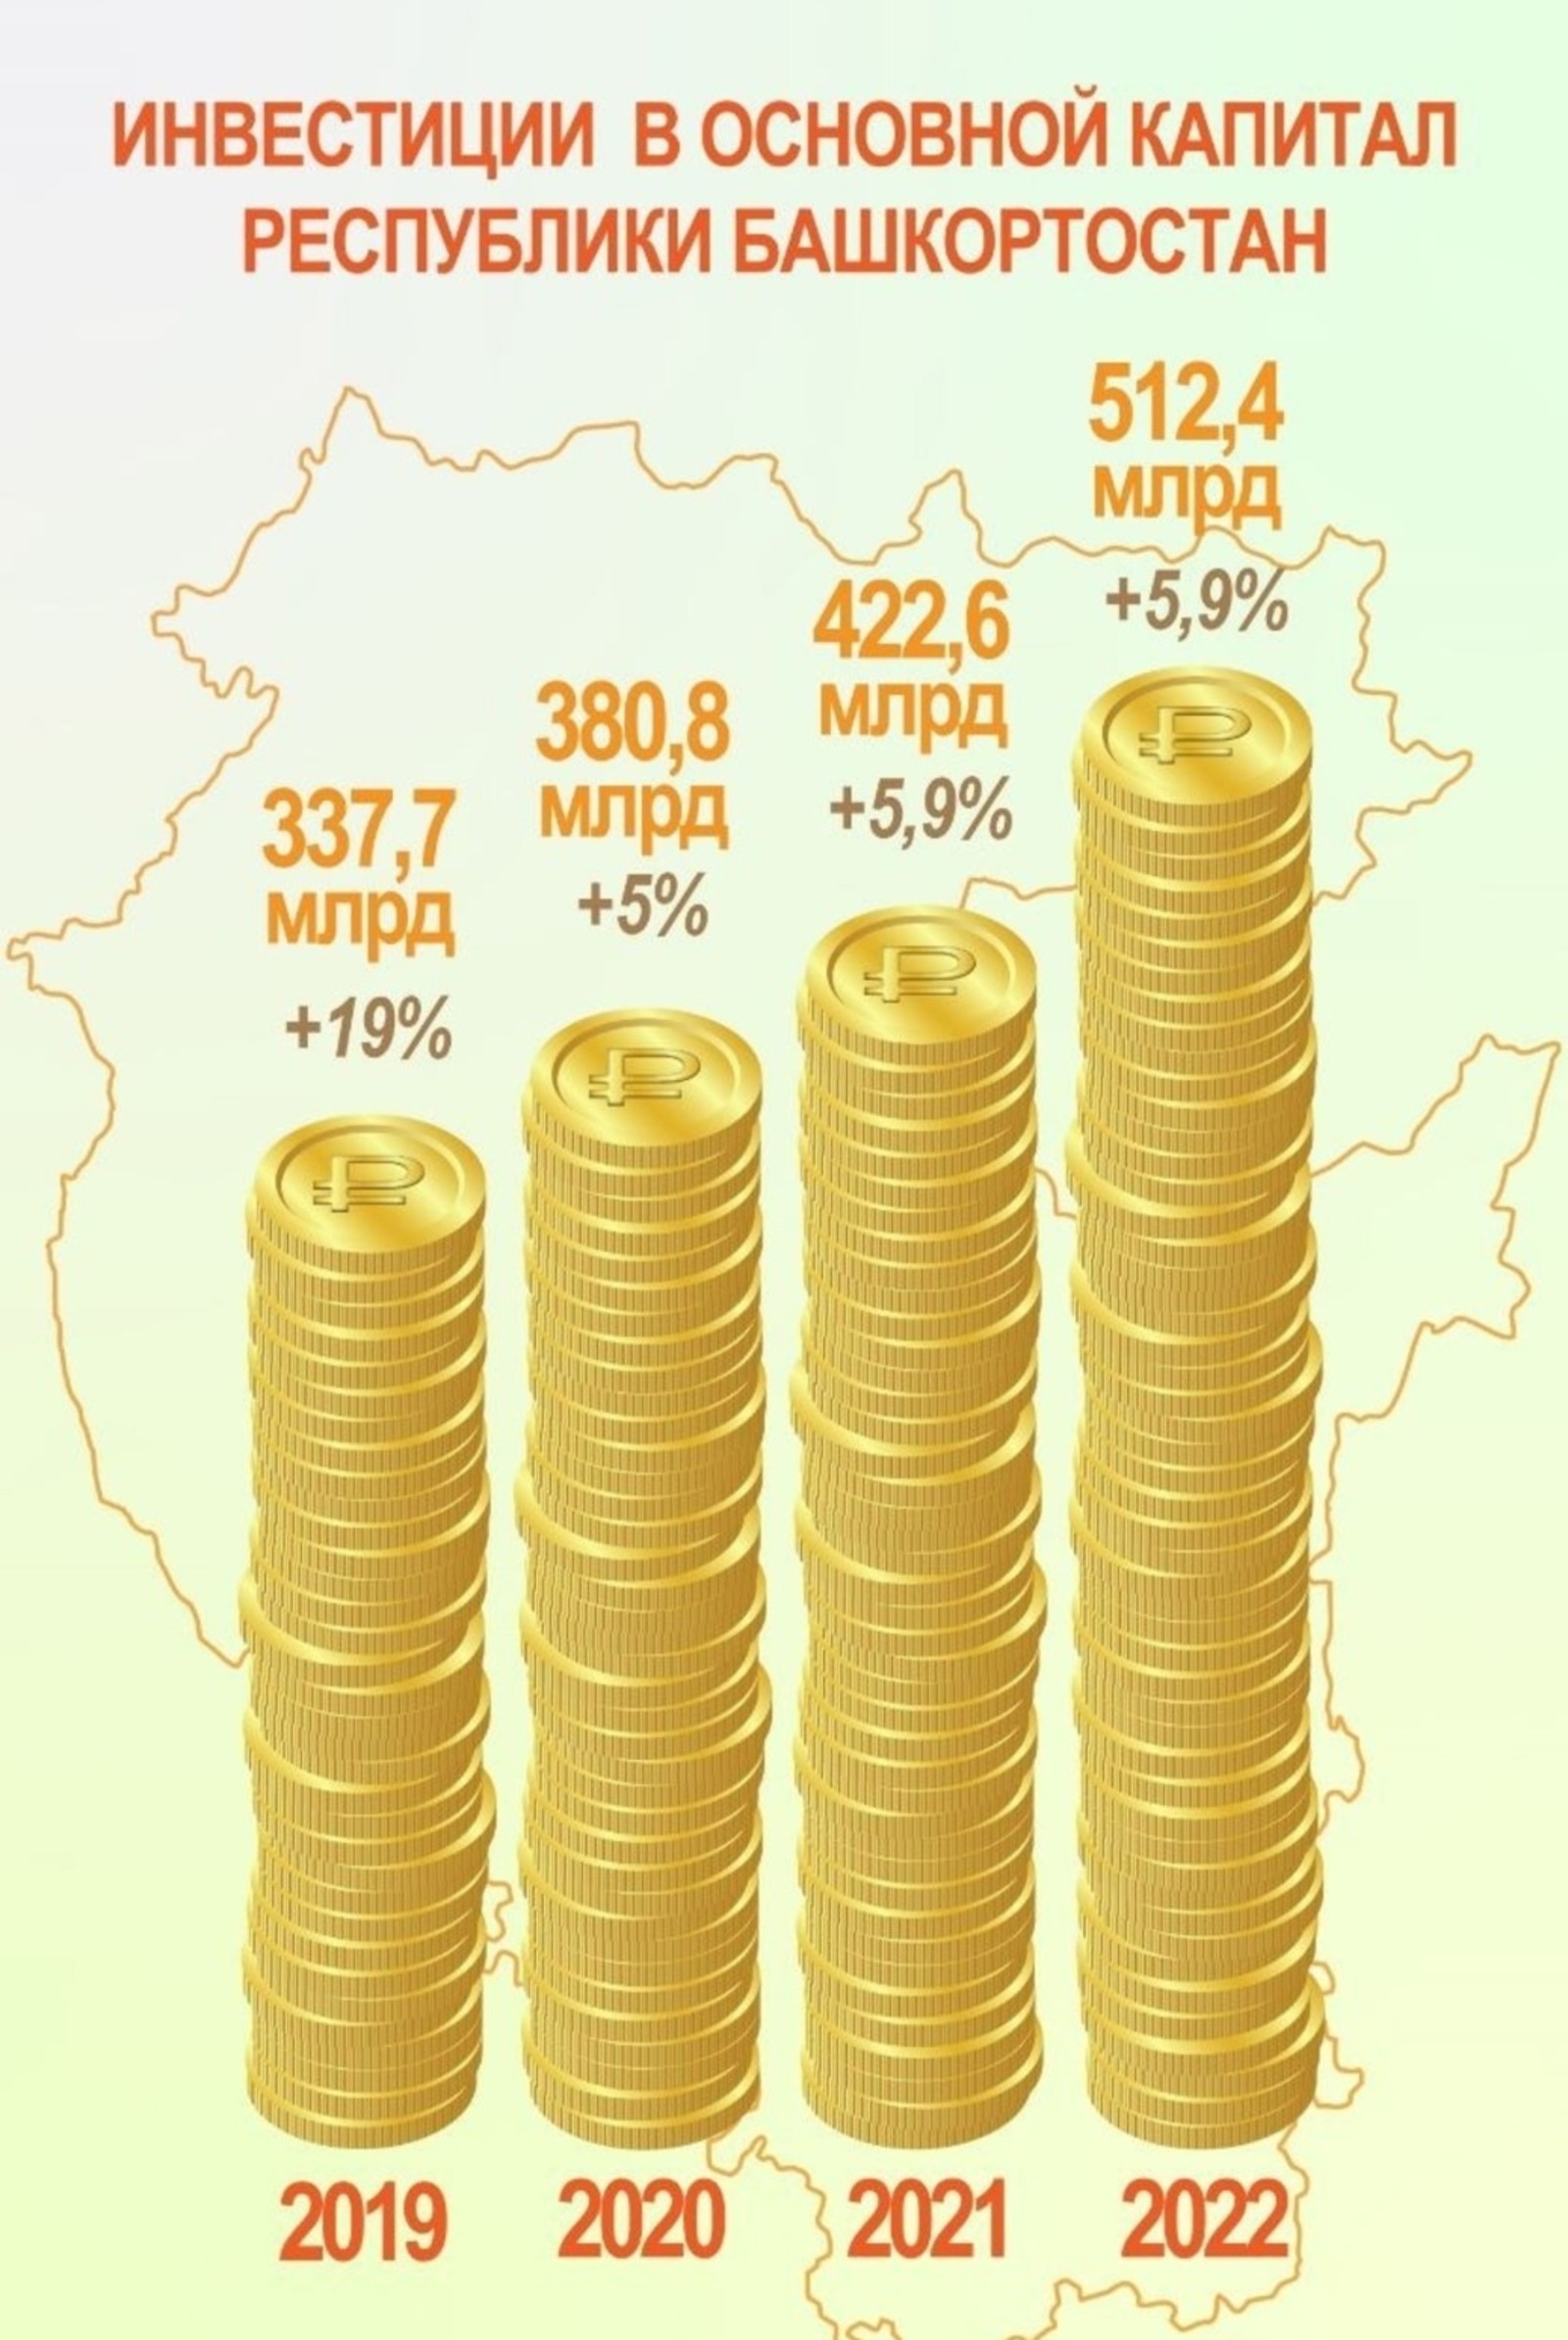 Эксперты прокомментировали выросший объём инвестиций в экономику Башкирии